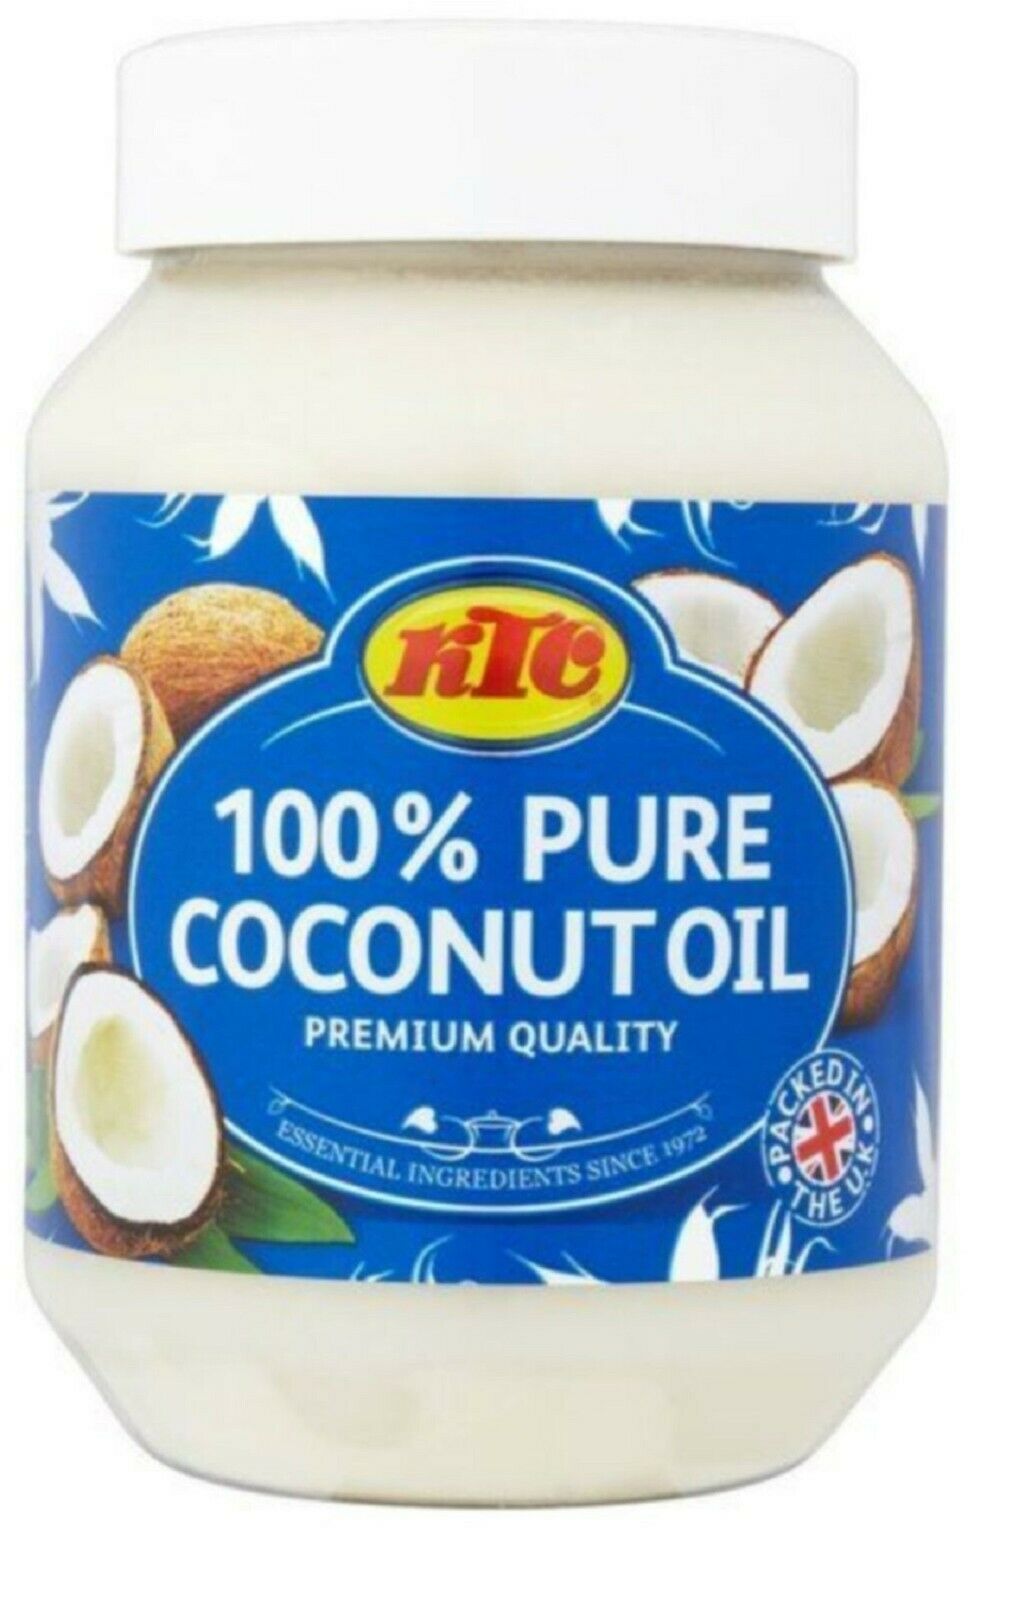 KTC 100% Pure Coconut Oil  500ml